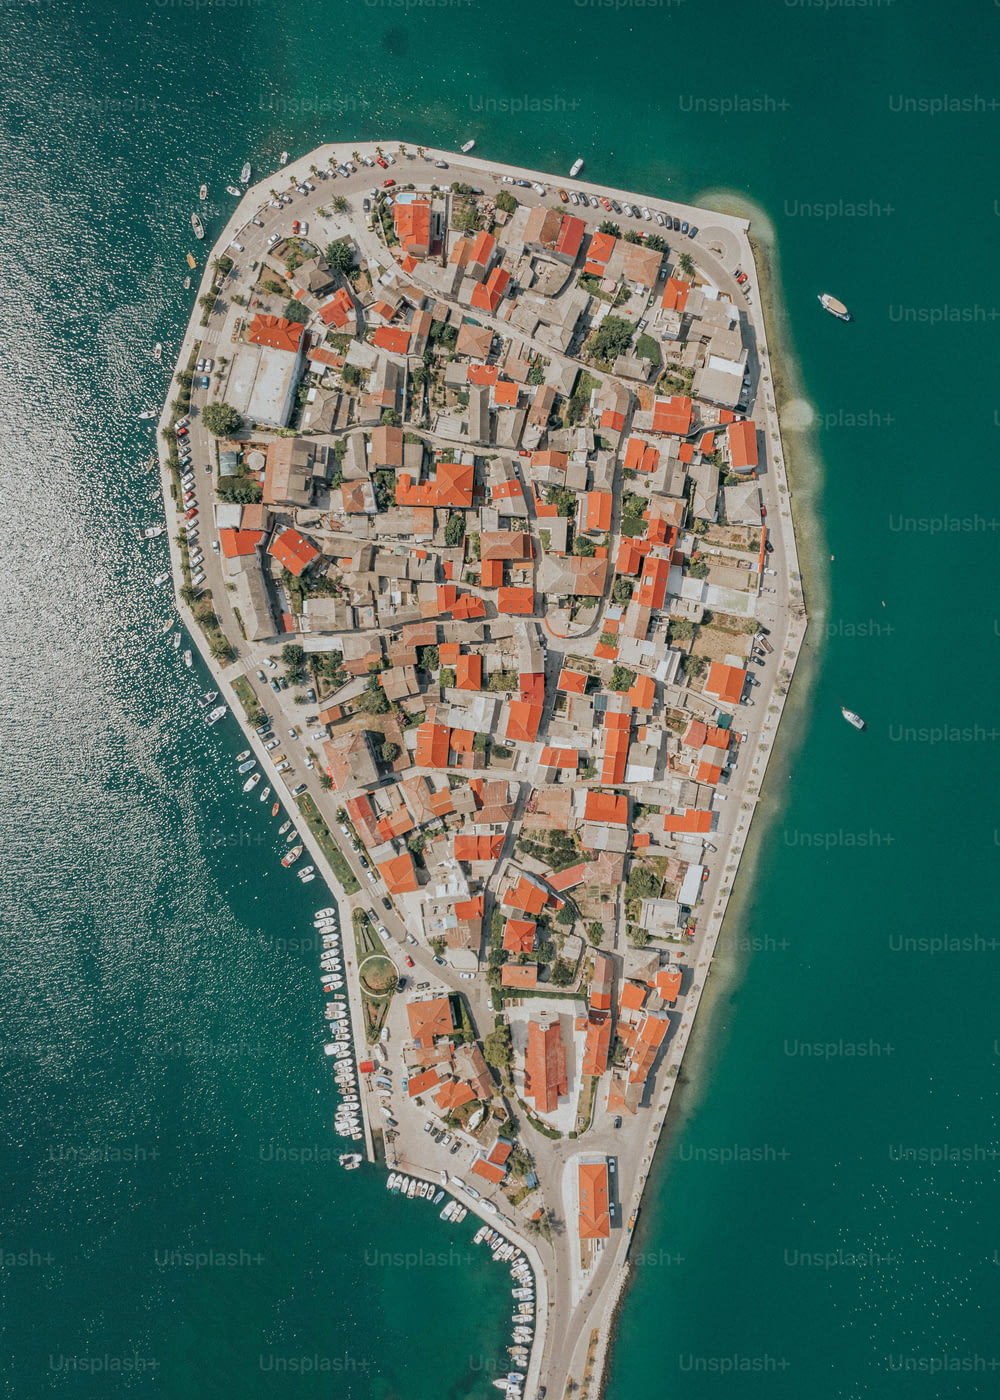 Una vista aerea di una piccola città sull'acqua